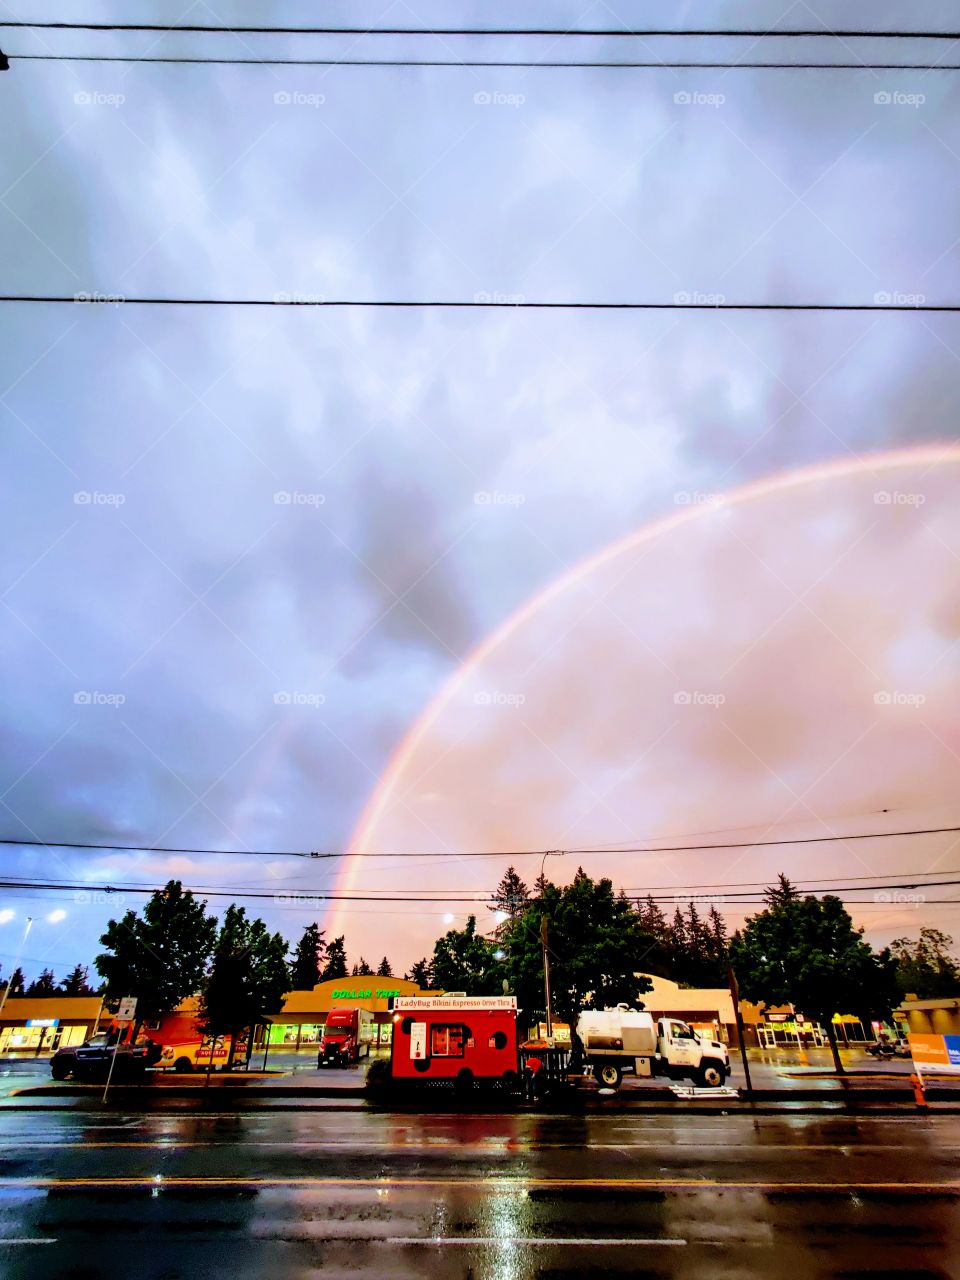 magical Double rainbow